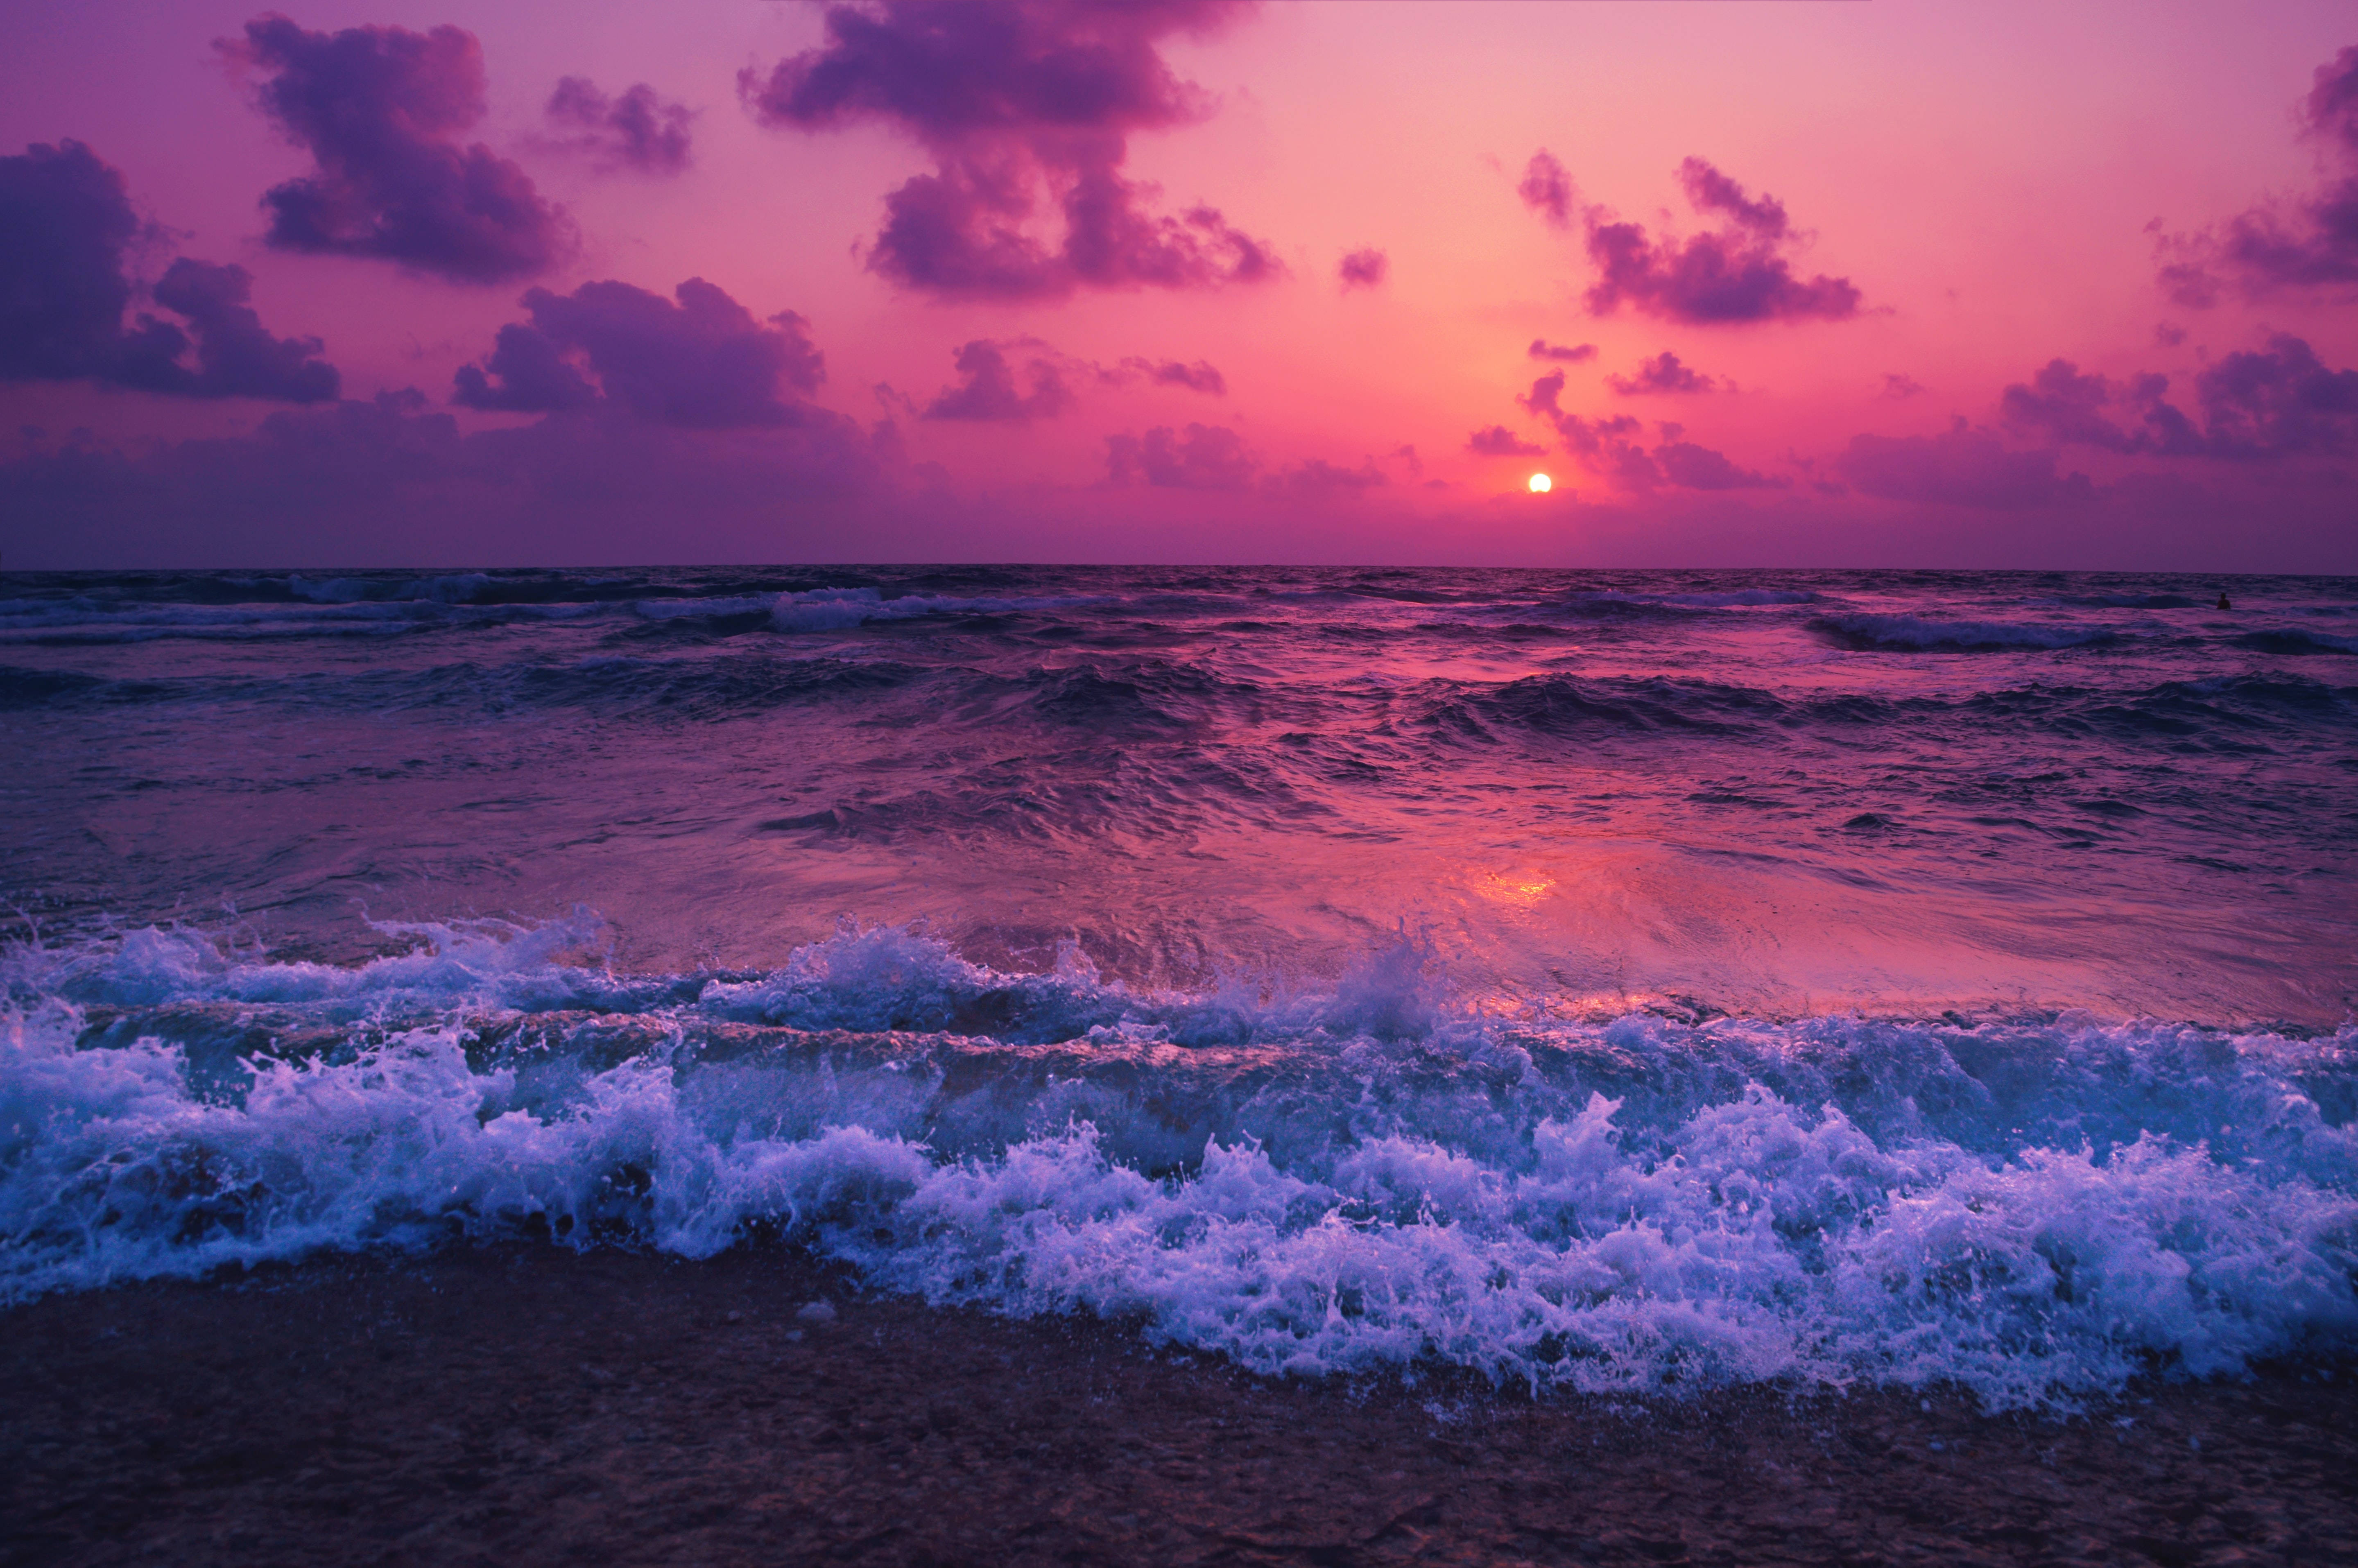 Aesthetic 1920x1080 HD Beach Desktop Purple Sunset Foam Wallpaper